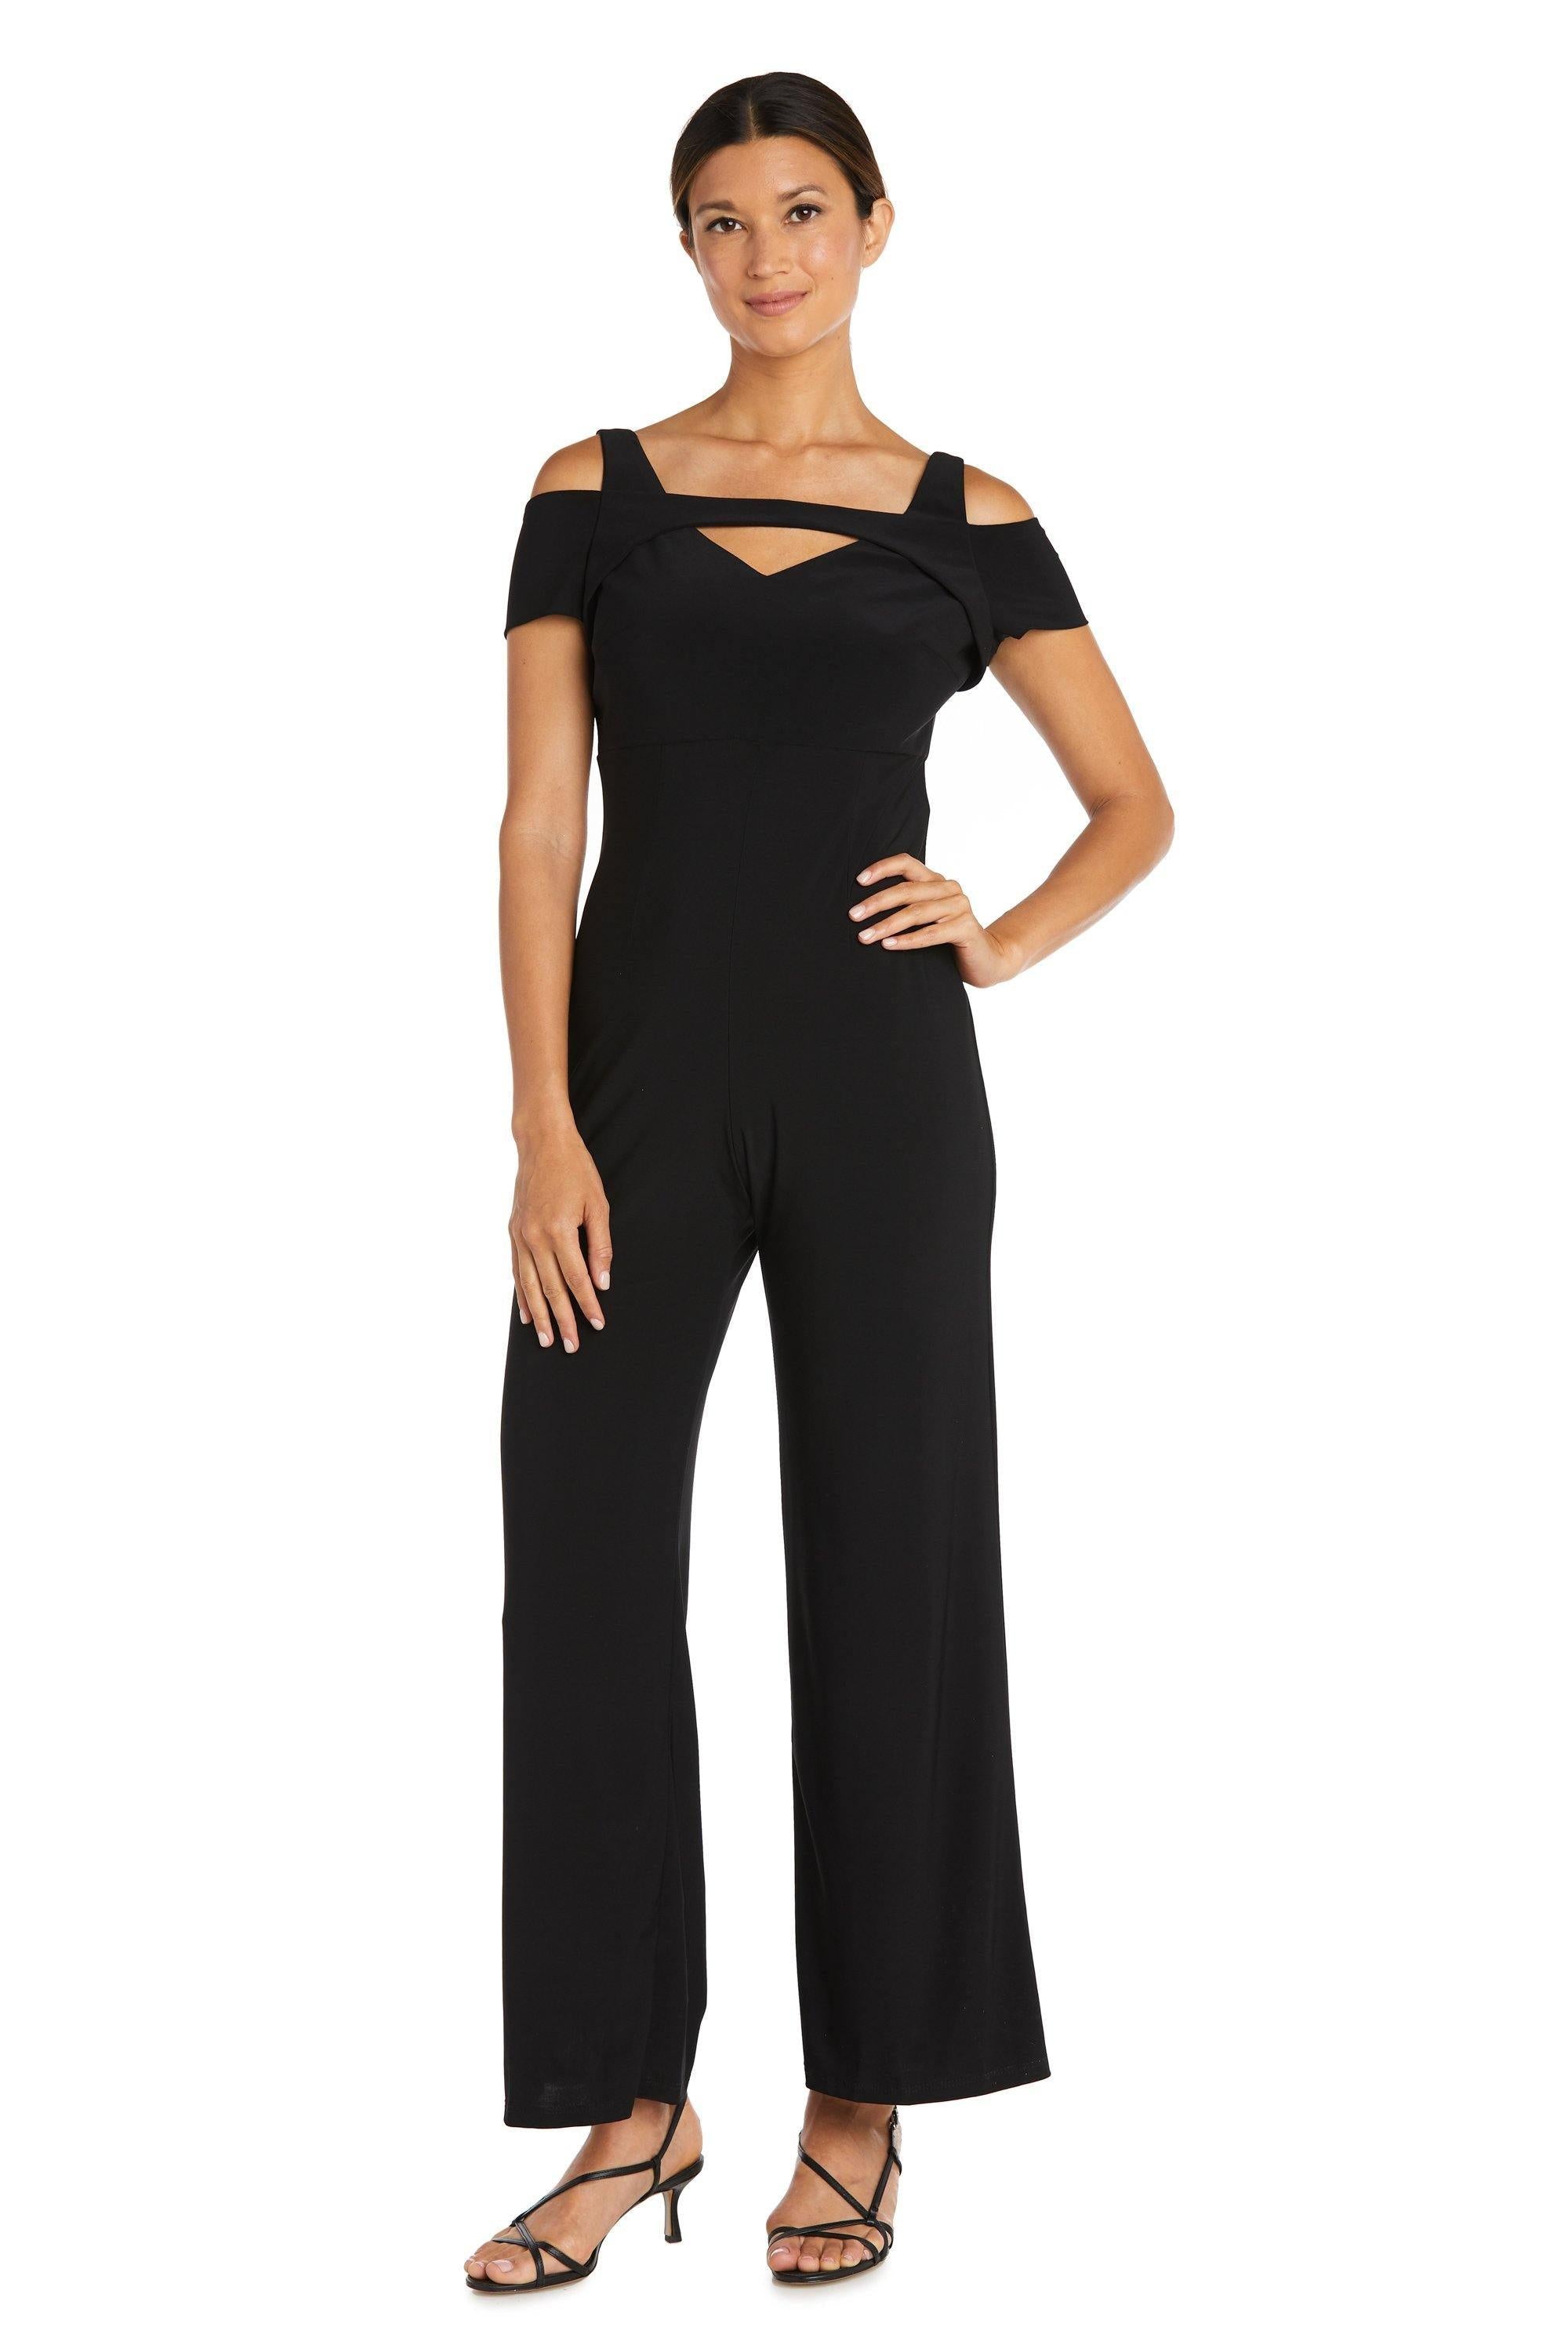 Nightway Formal Off Shoulder Petite Jumpsuit Sale 21518P | The Dress Outlet